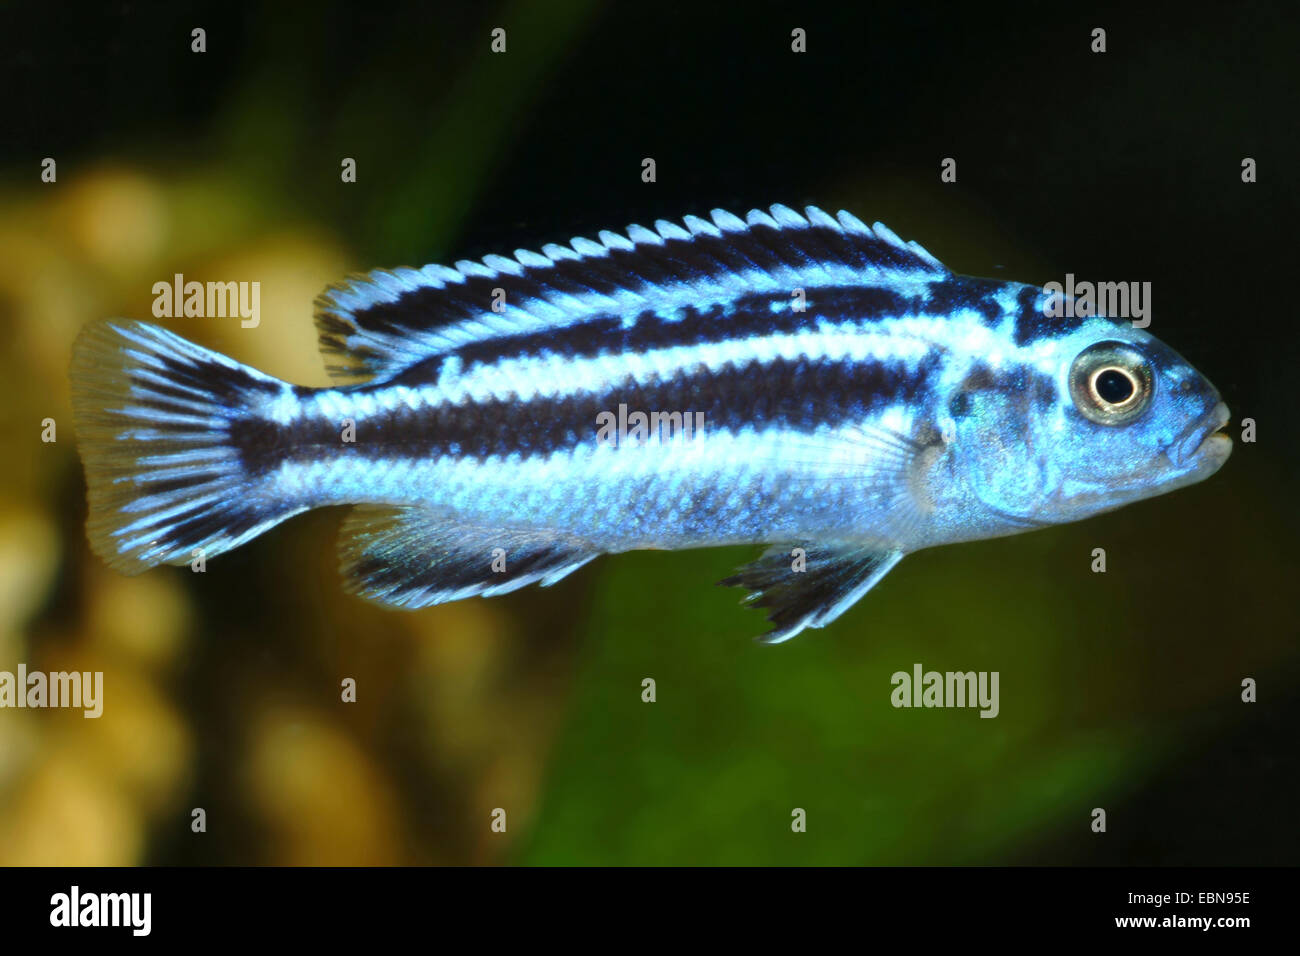 Malawi cichlid (Melanochromis maingano), swimming Stock Photo